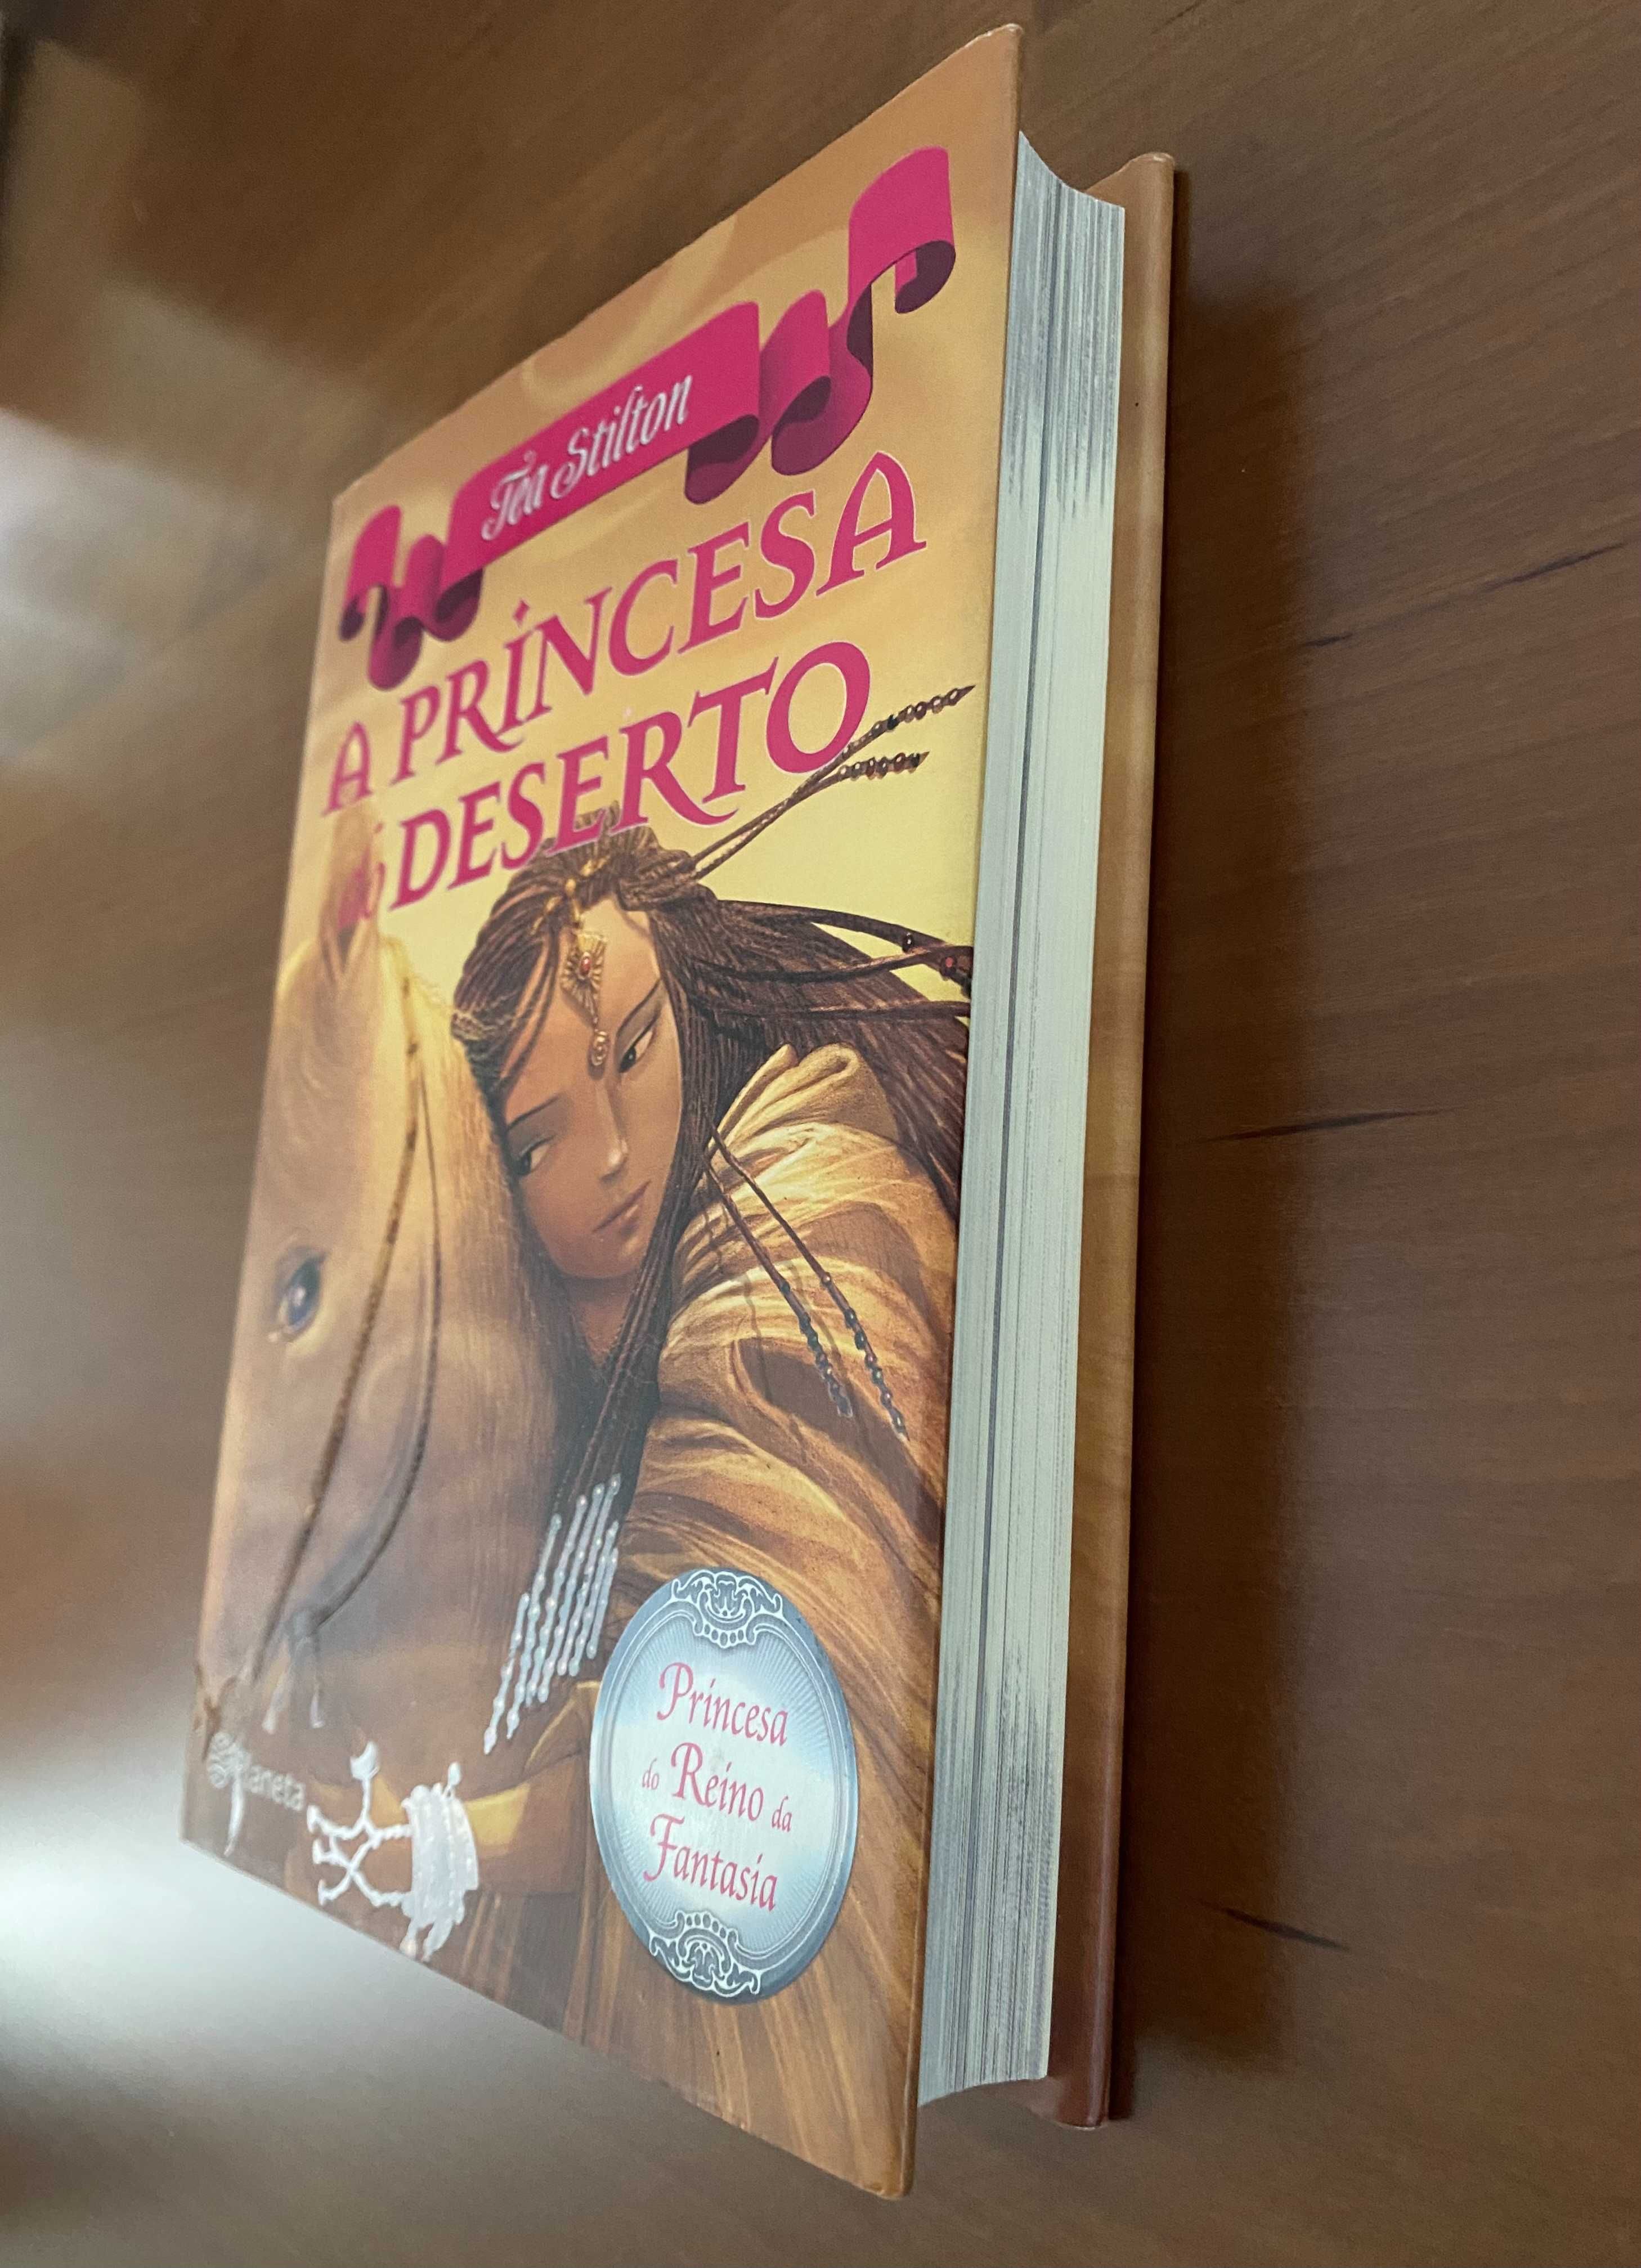 Livro "A Princesa do Deserto" (3)